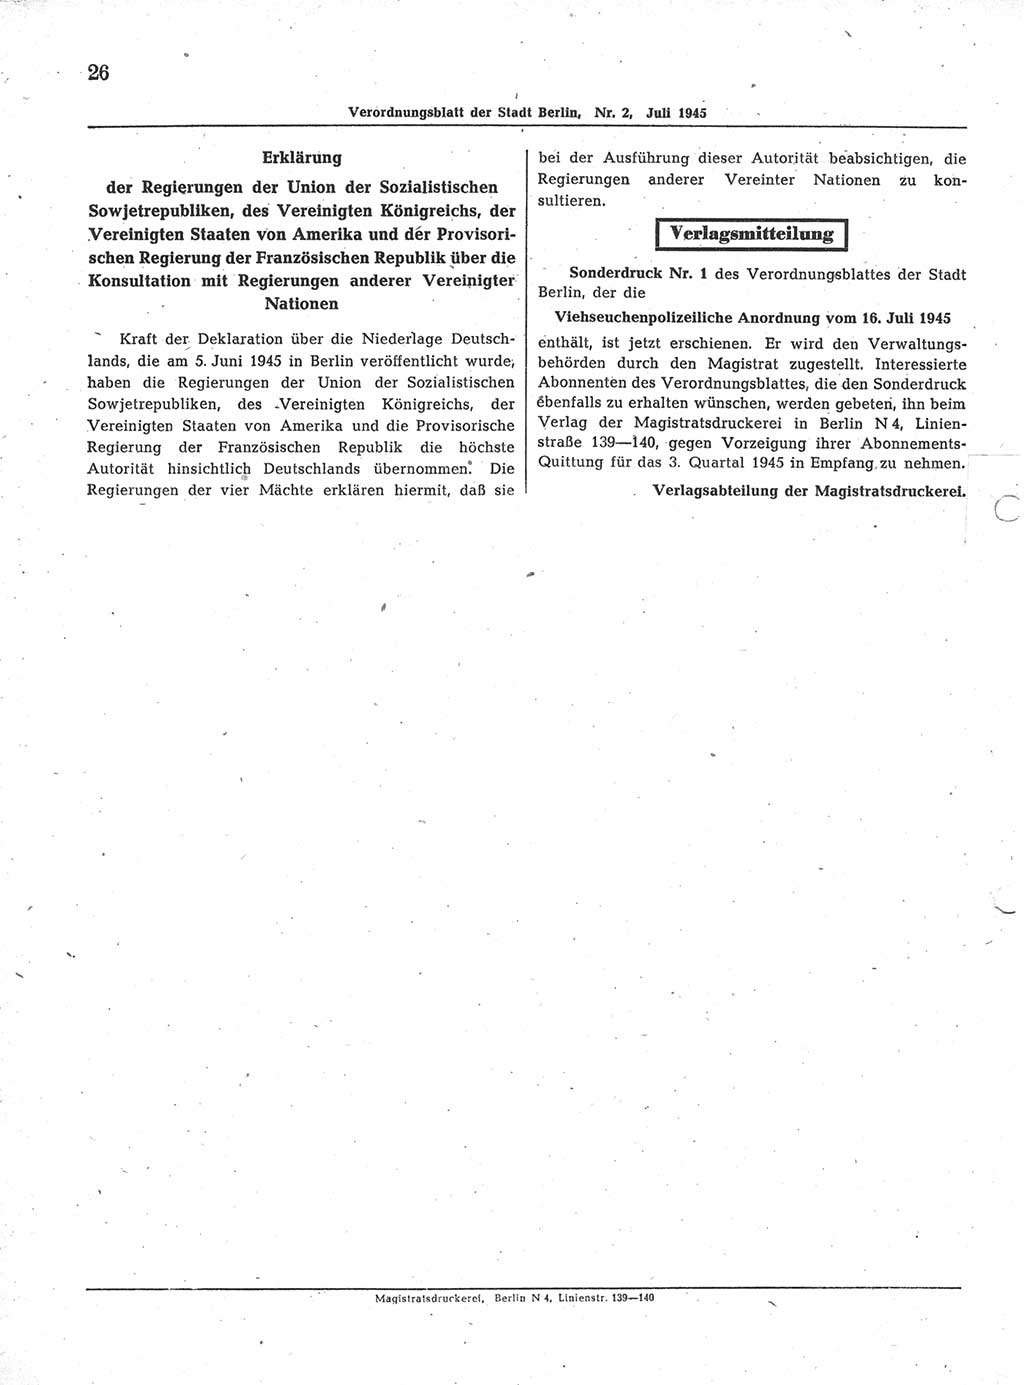 Verordnungsblatt (VOBl.) der Stadt Berlin 1945, Seite 26 (VOBl. Bln. 1945, S. 26)